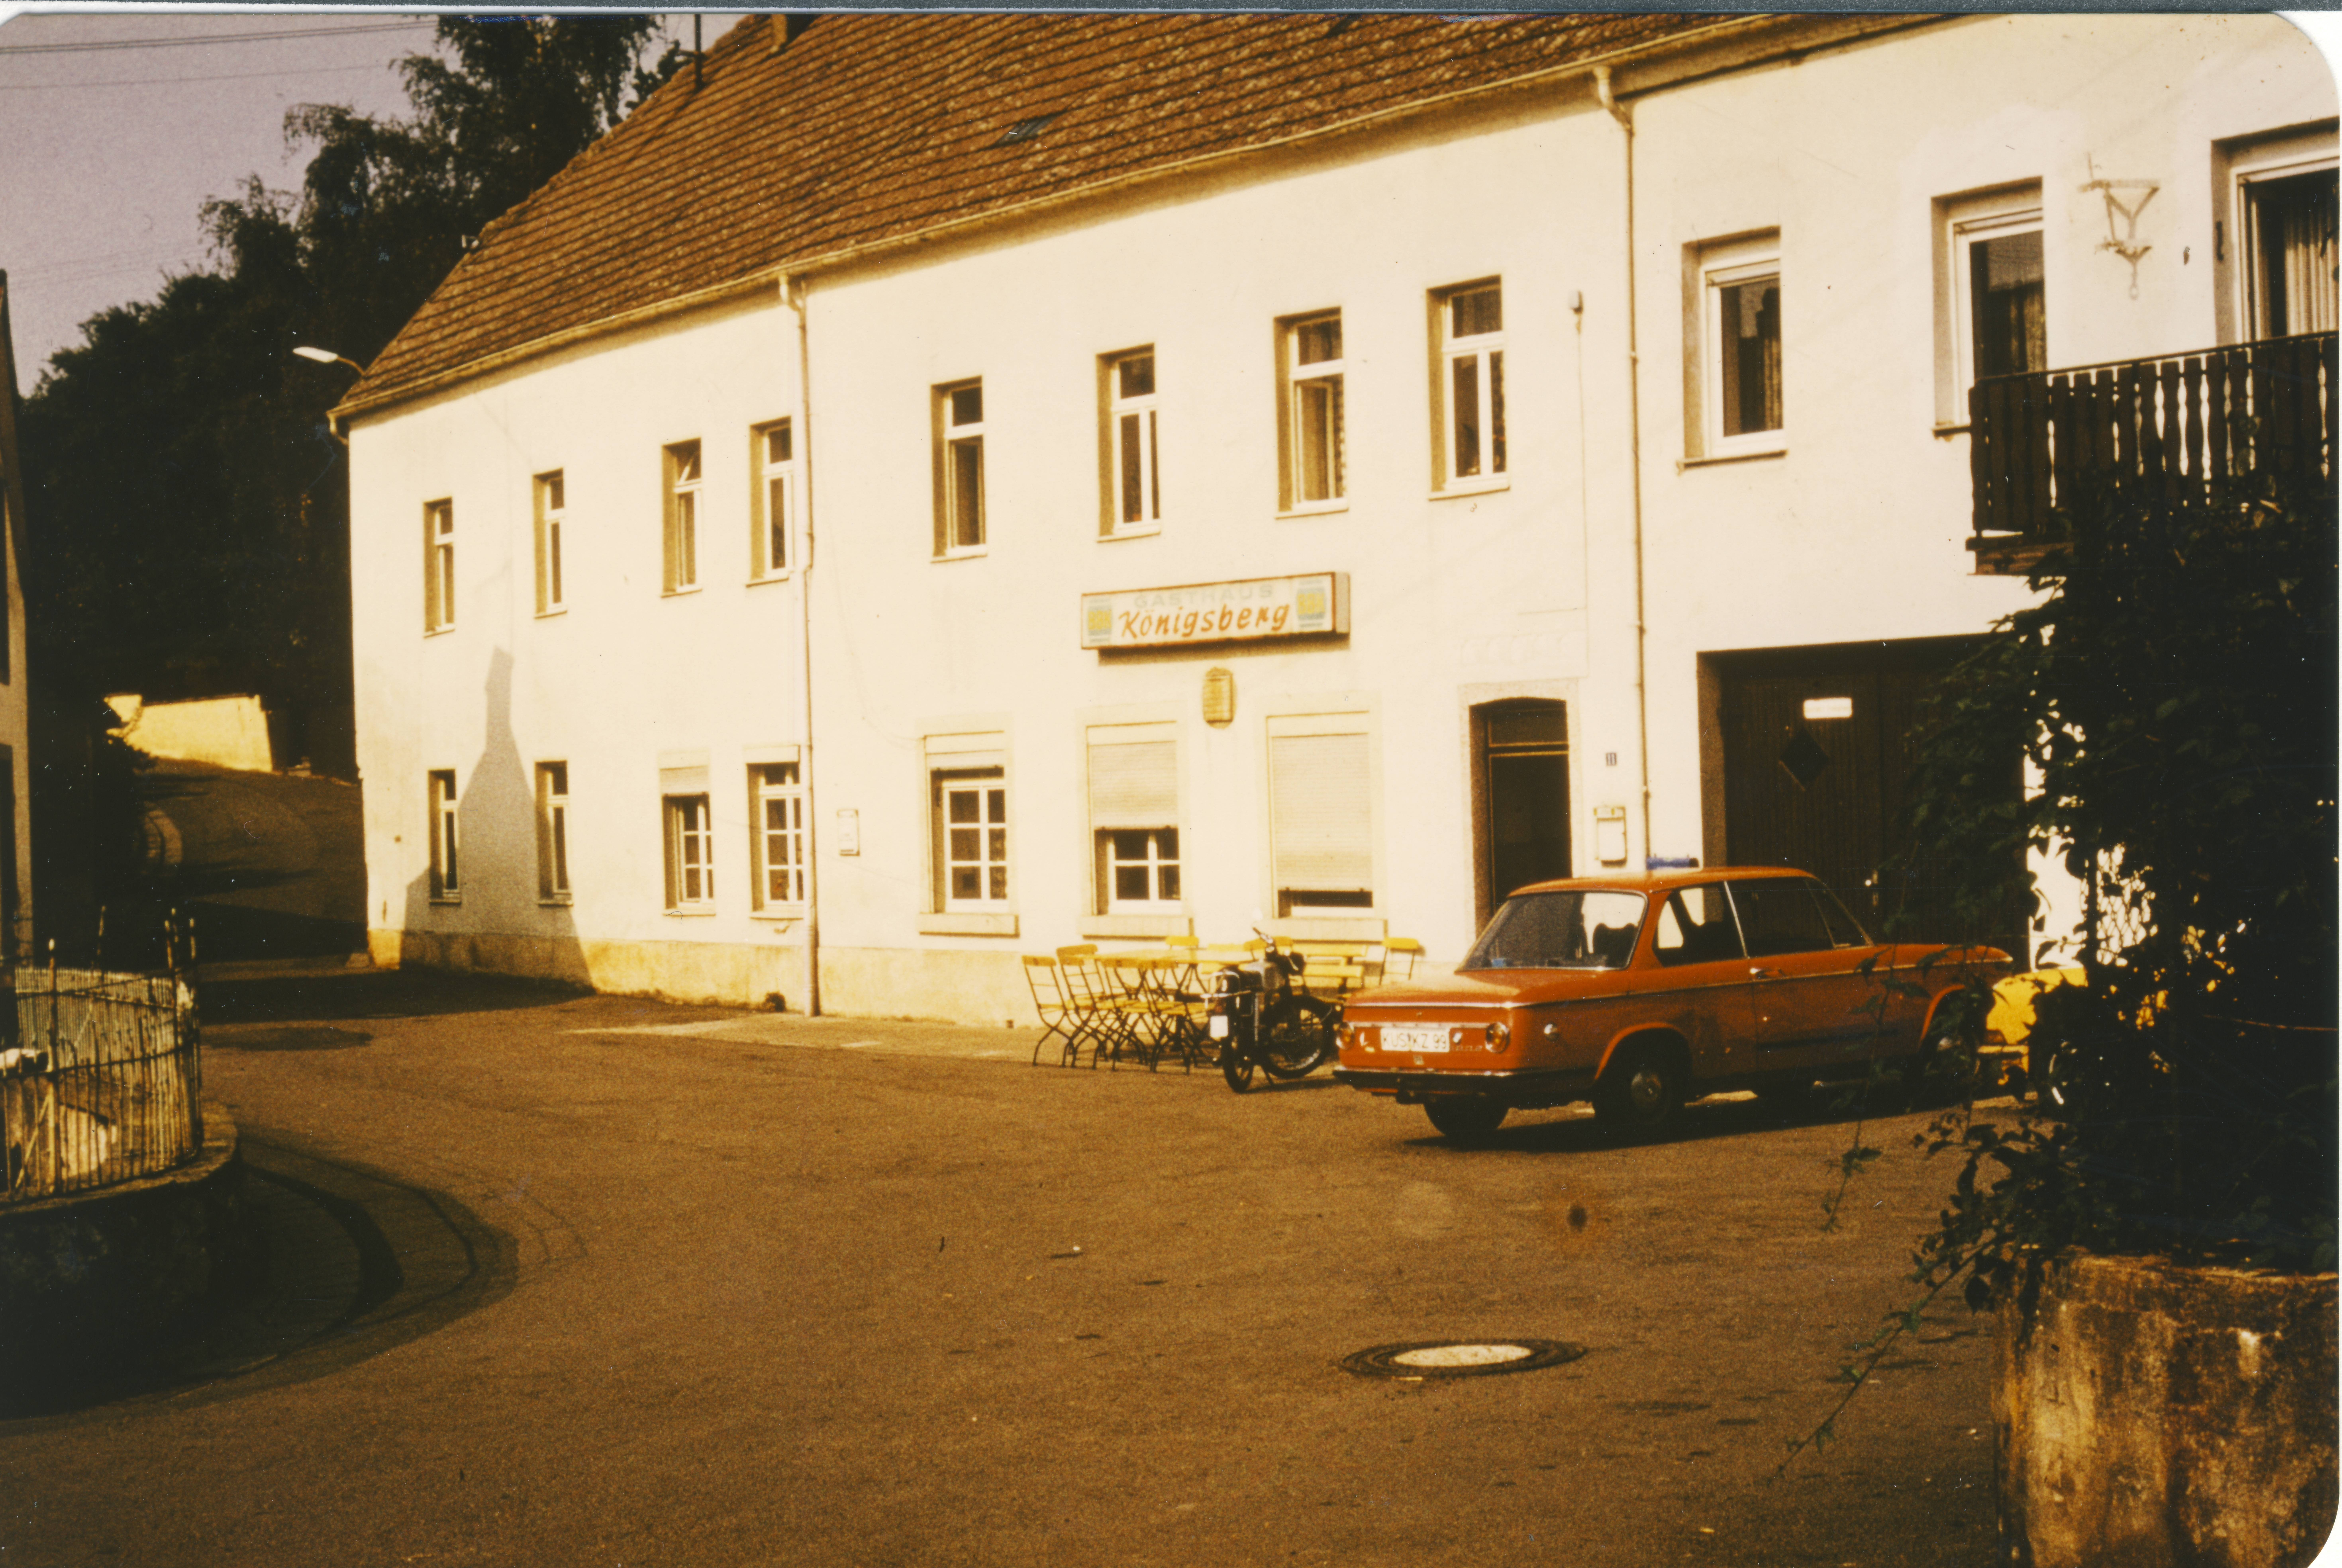 Gasthaus "Zum Königsberg" in Hinzweiler im Jahr 1981